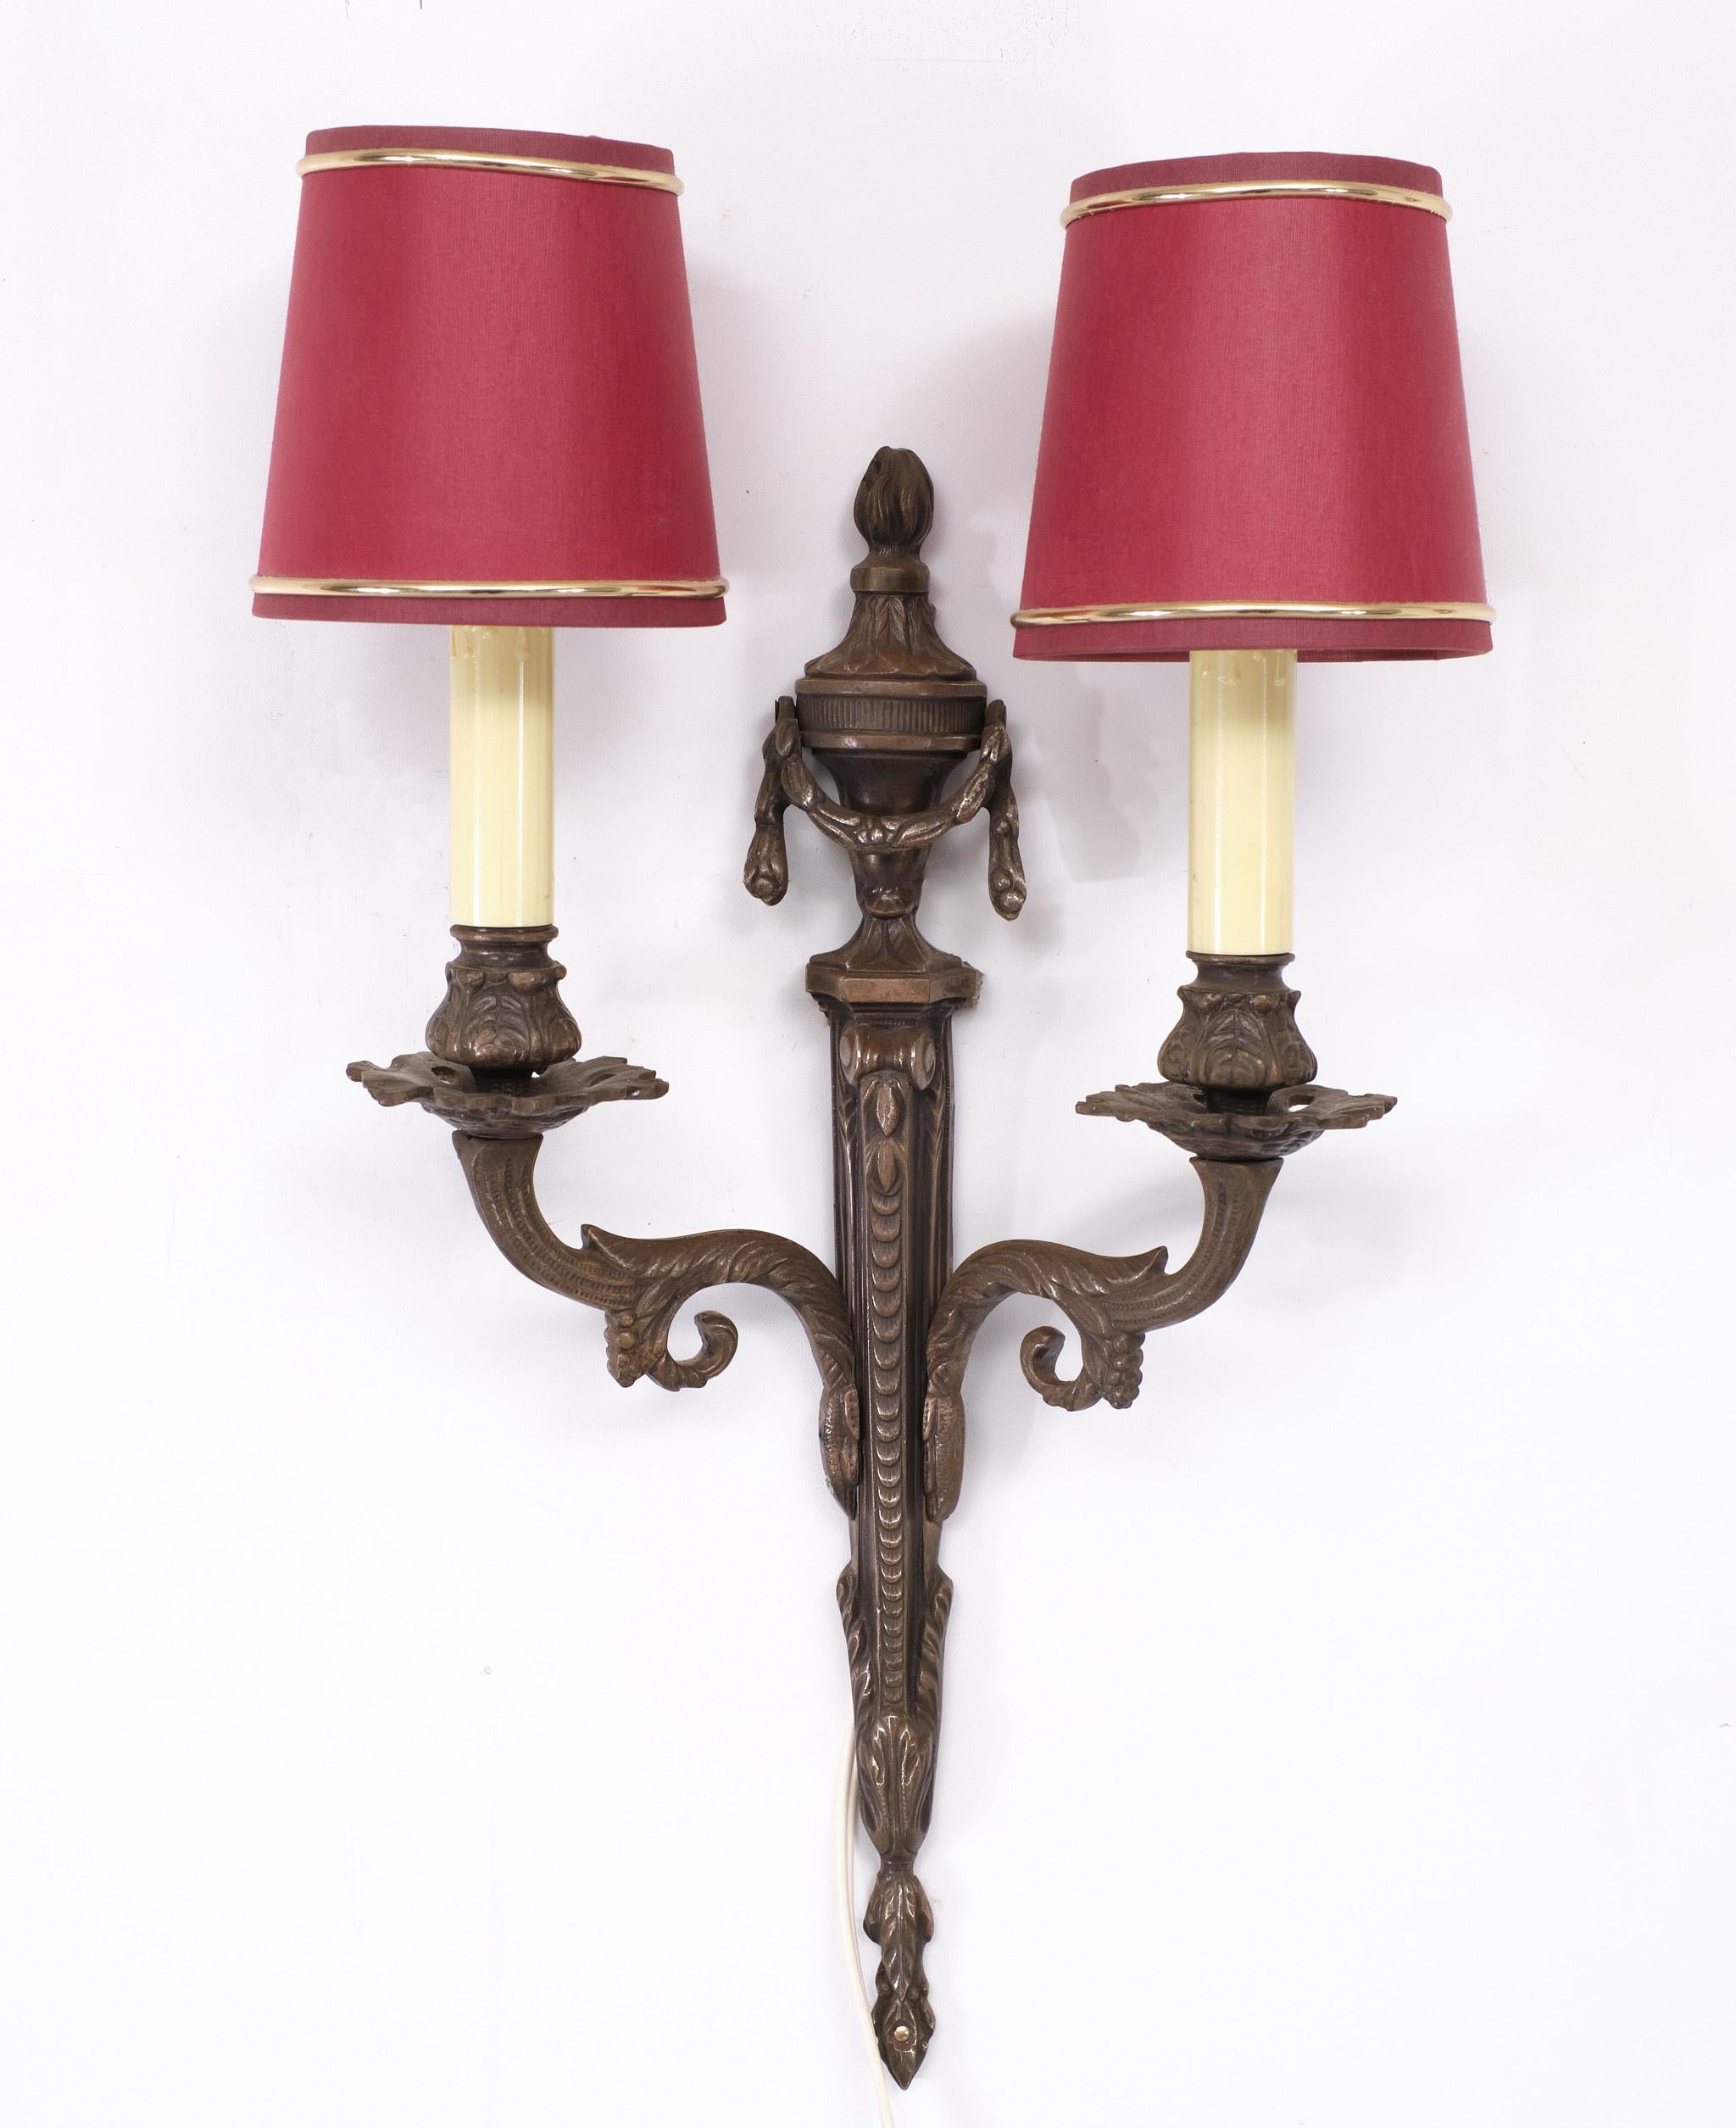 Sehr schönes Set von Bronze Wandleuchten.  Louis XVI-Stil  Wandleuchter, 2er-Set
Kleine Fassung Glühbirnen benötigt, kommt mit Red Silk Schirme. 1970er Jahre  Frankreich 



